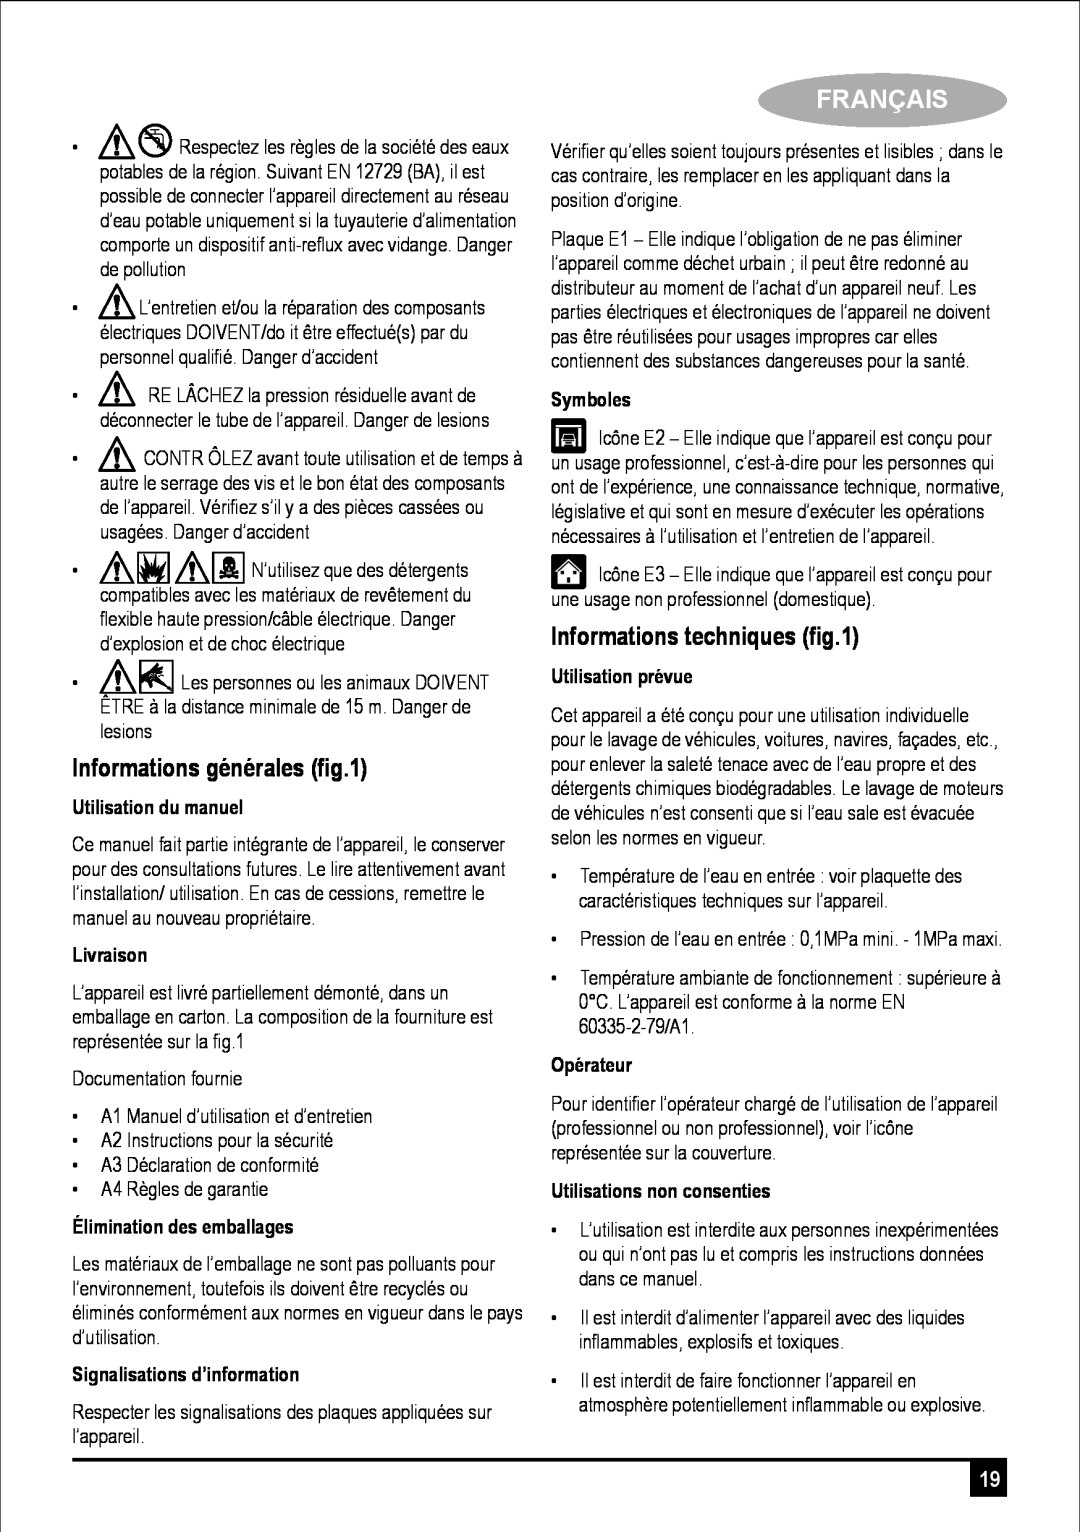 Black & Decker PW1700SPM manual Informations générales ﬁg.1, Français, Informations techniques ﬁg.1, Utilisation du manuel 